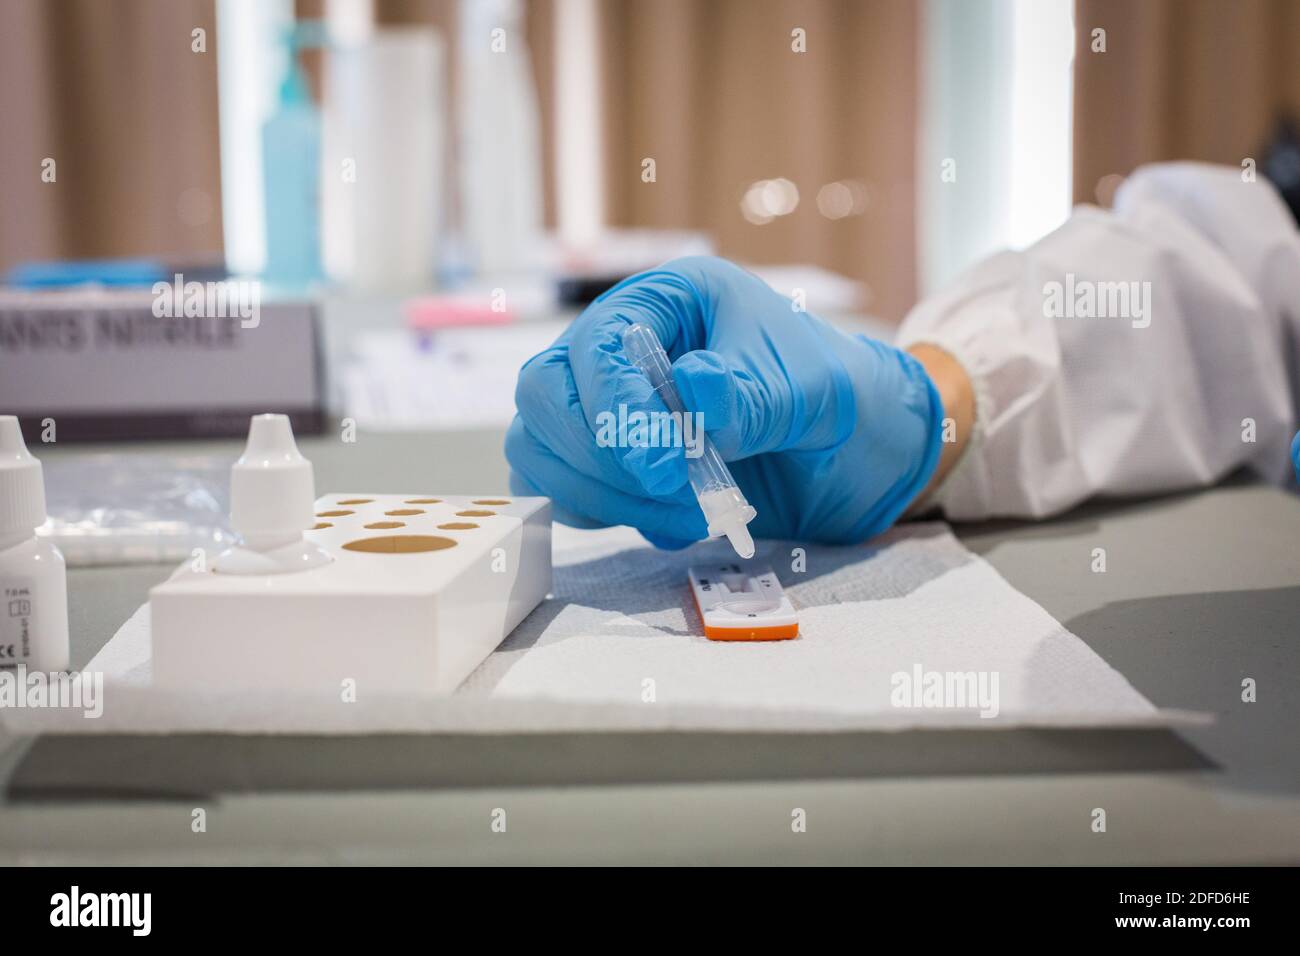 Nurse réalise un test antigénique pour la détection des antigènes du COV-SRAS-2, responsable de la COVID-19, Angoulême, France, novembre 2020. Banque D'Images